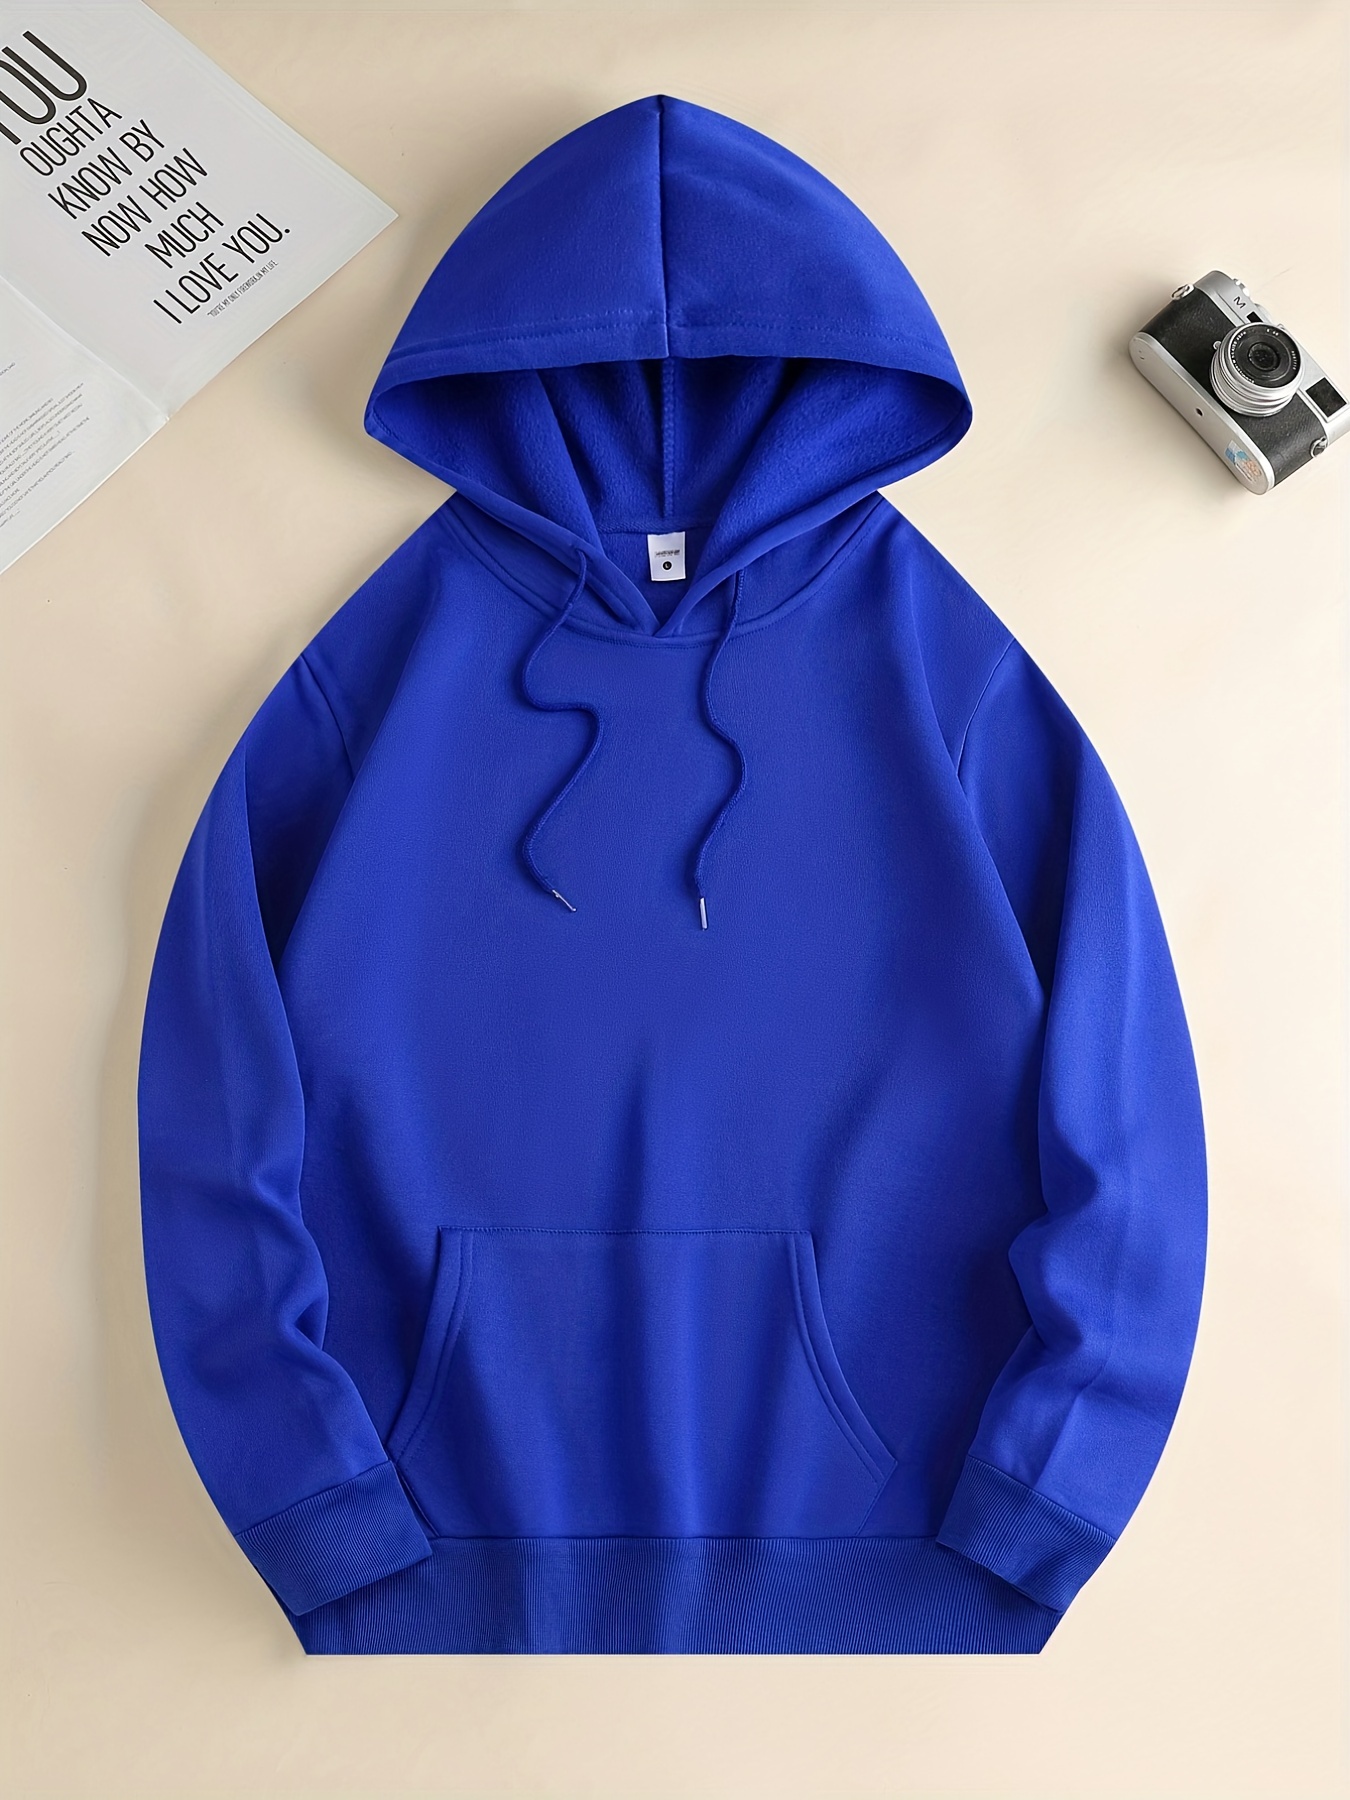 Blue Hoodie Men's Casual Men's Hooded Sweater Personalized Printed Men's  Coat Men Blue Hoodie